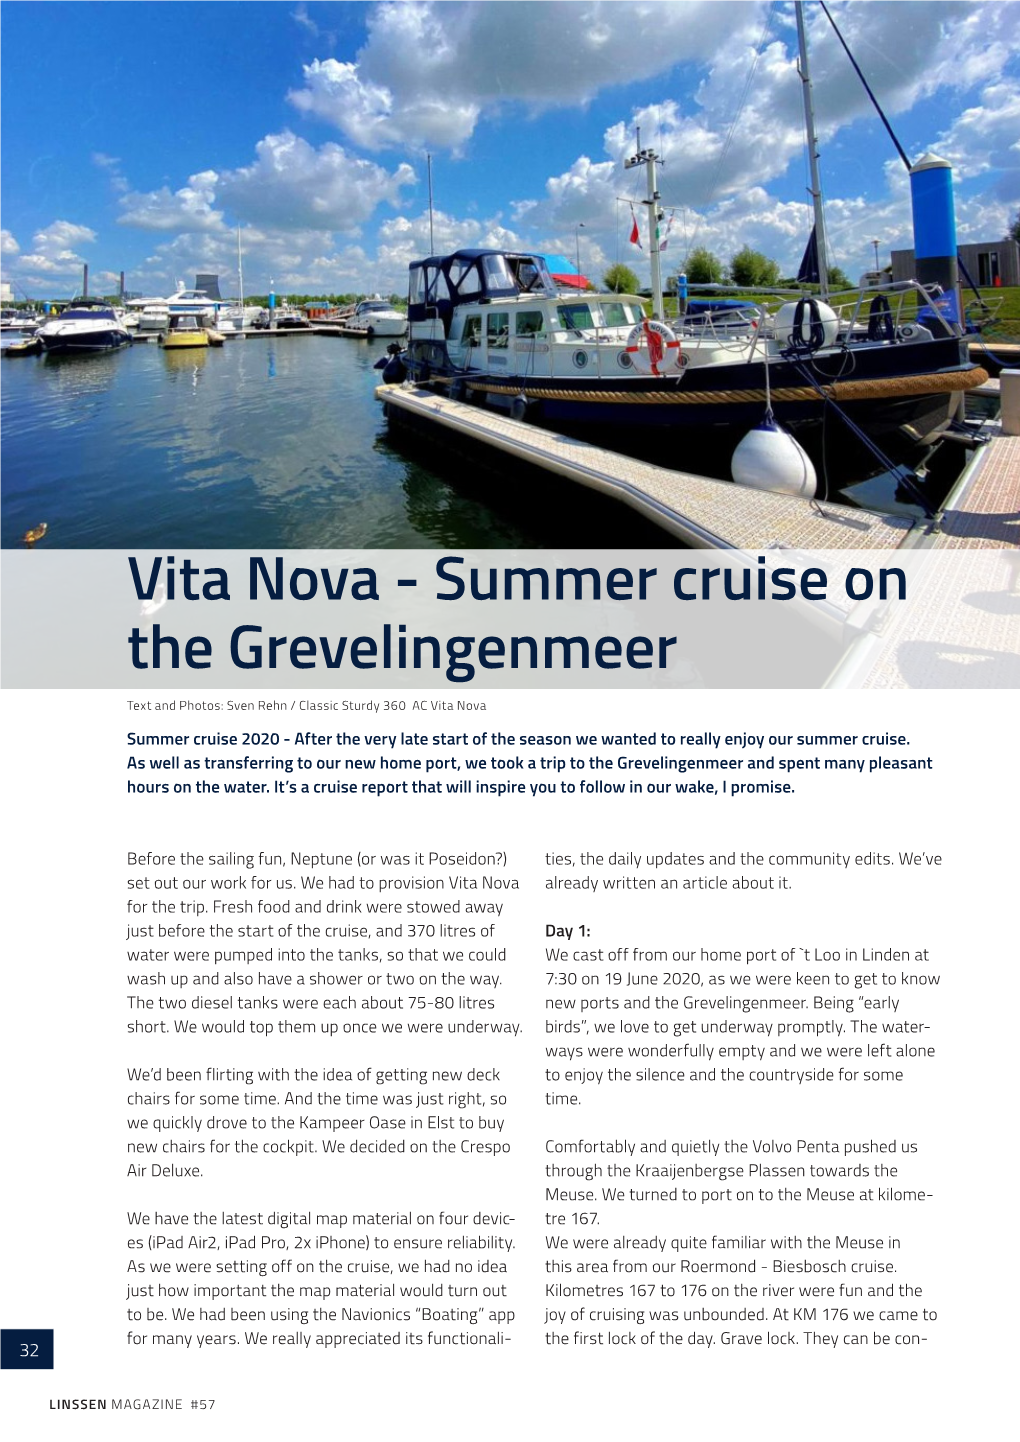 Vita Nova - Summer Cruise on the Grevelingenmeer